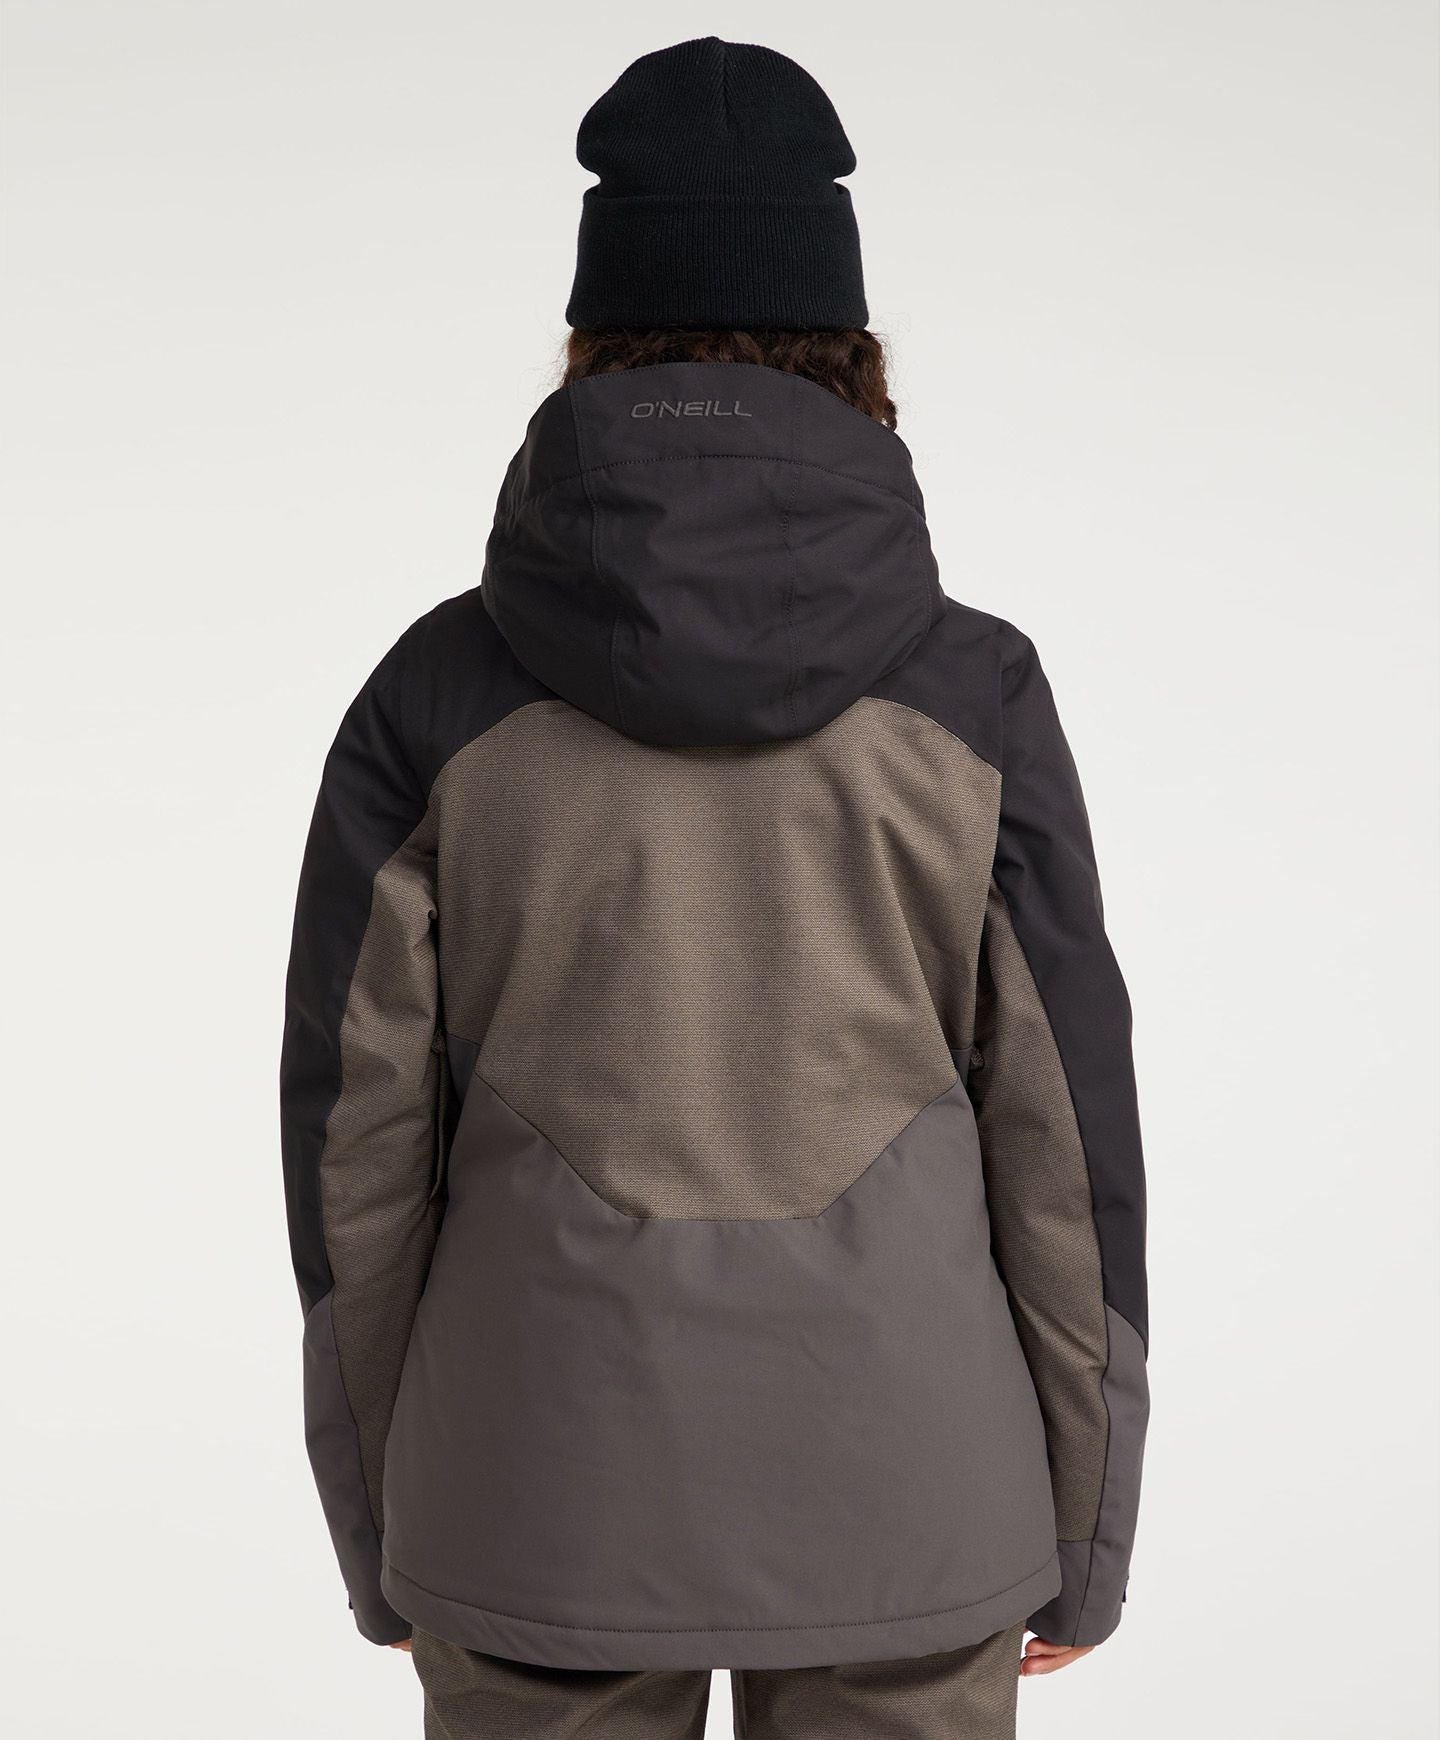 Women's Carbonite Snow Jacket - Black Out Colour Block